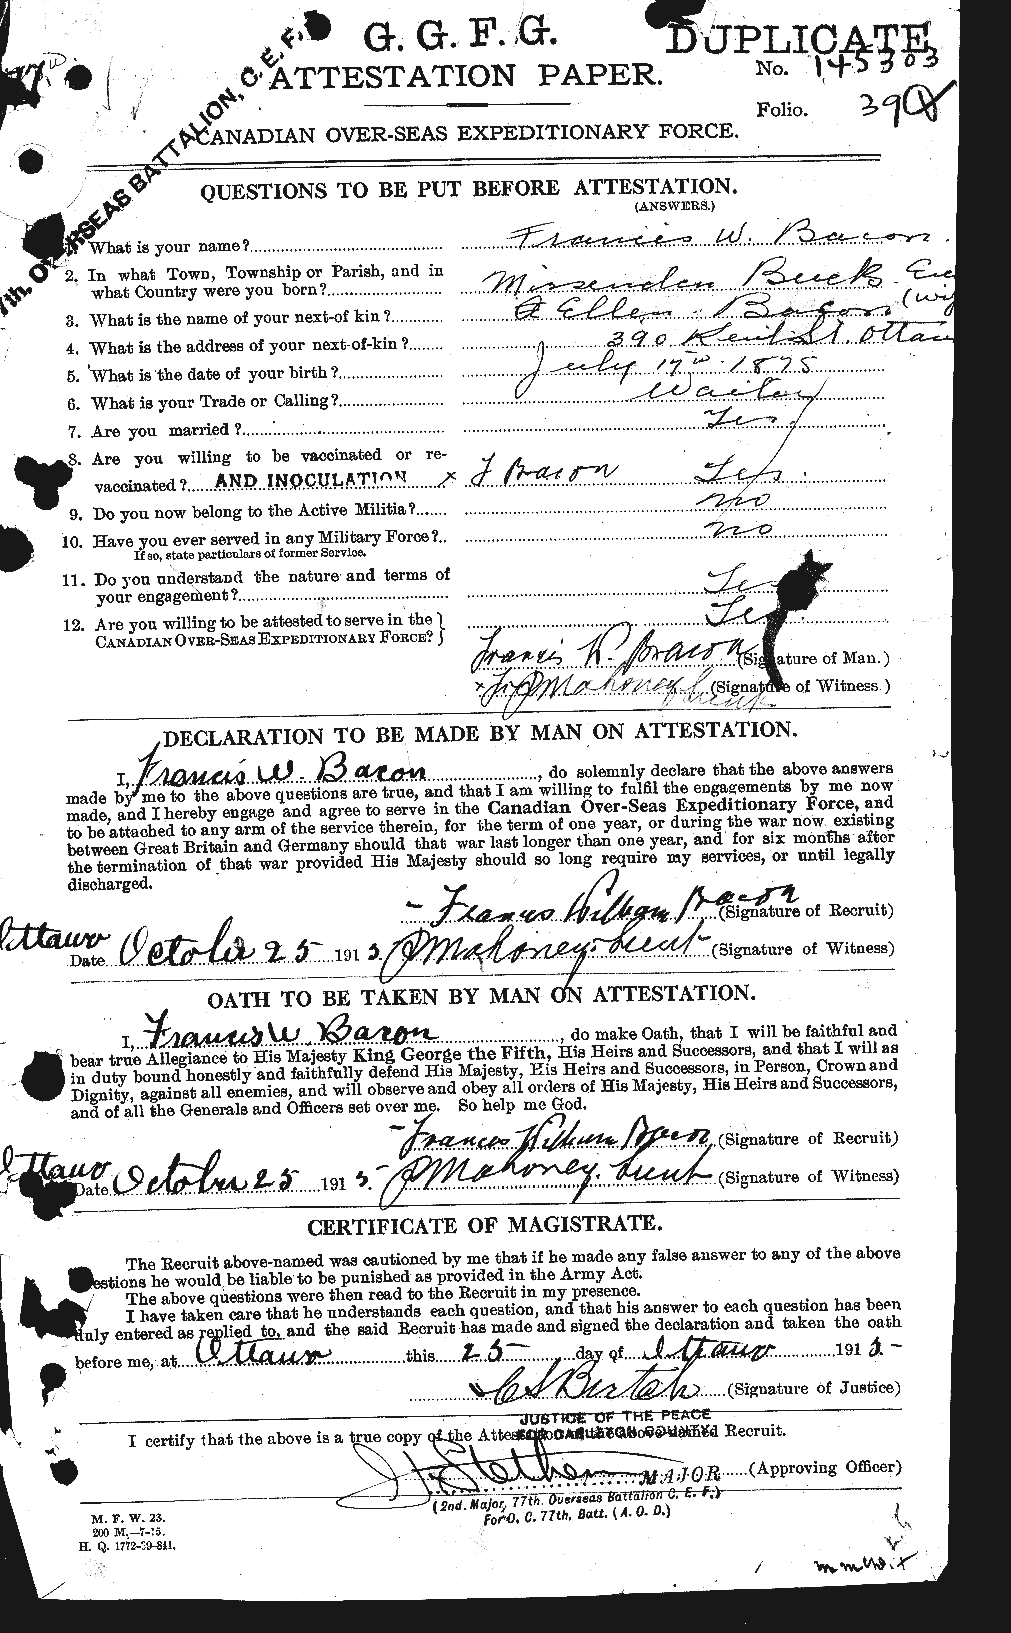 Dossiers du Personnel de la Première Guerre mondiale - CEC 217895a